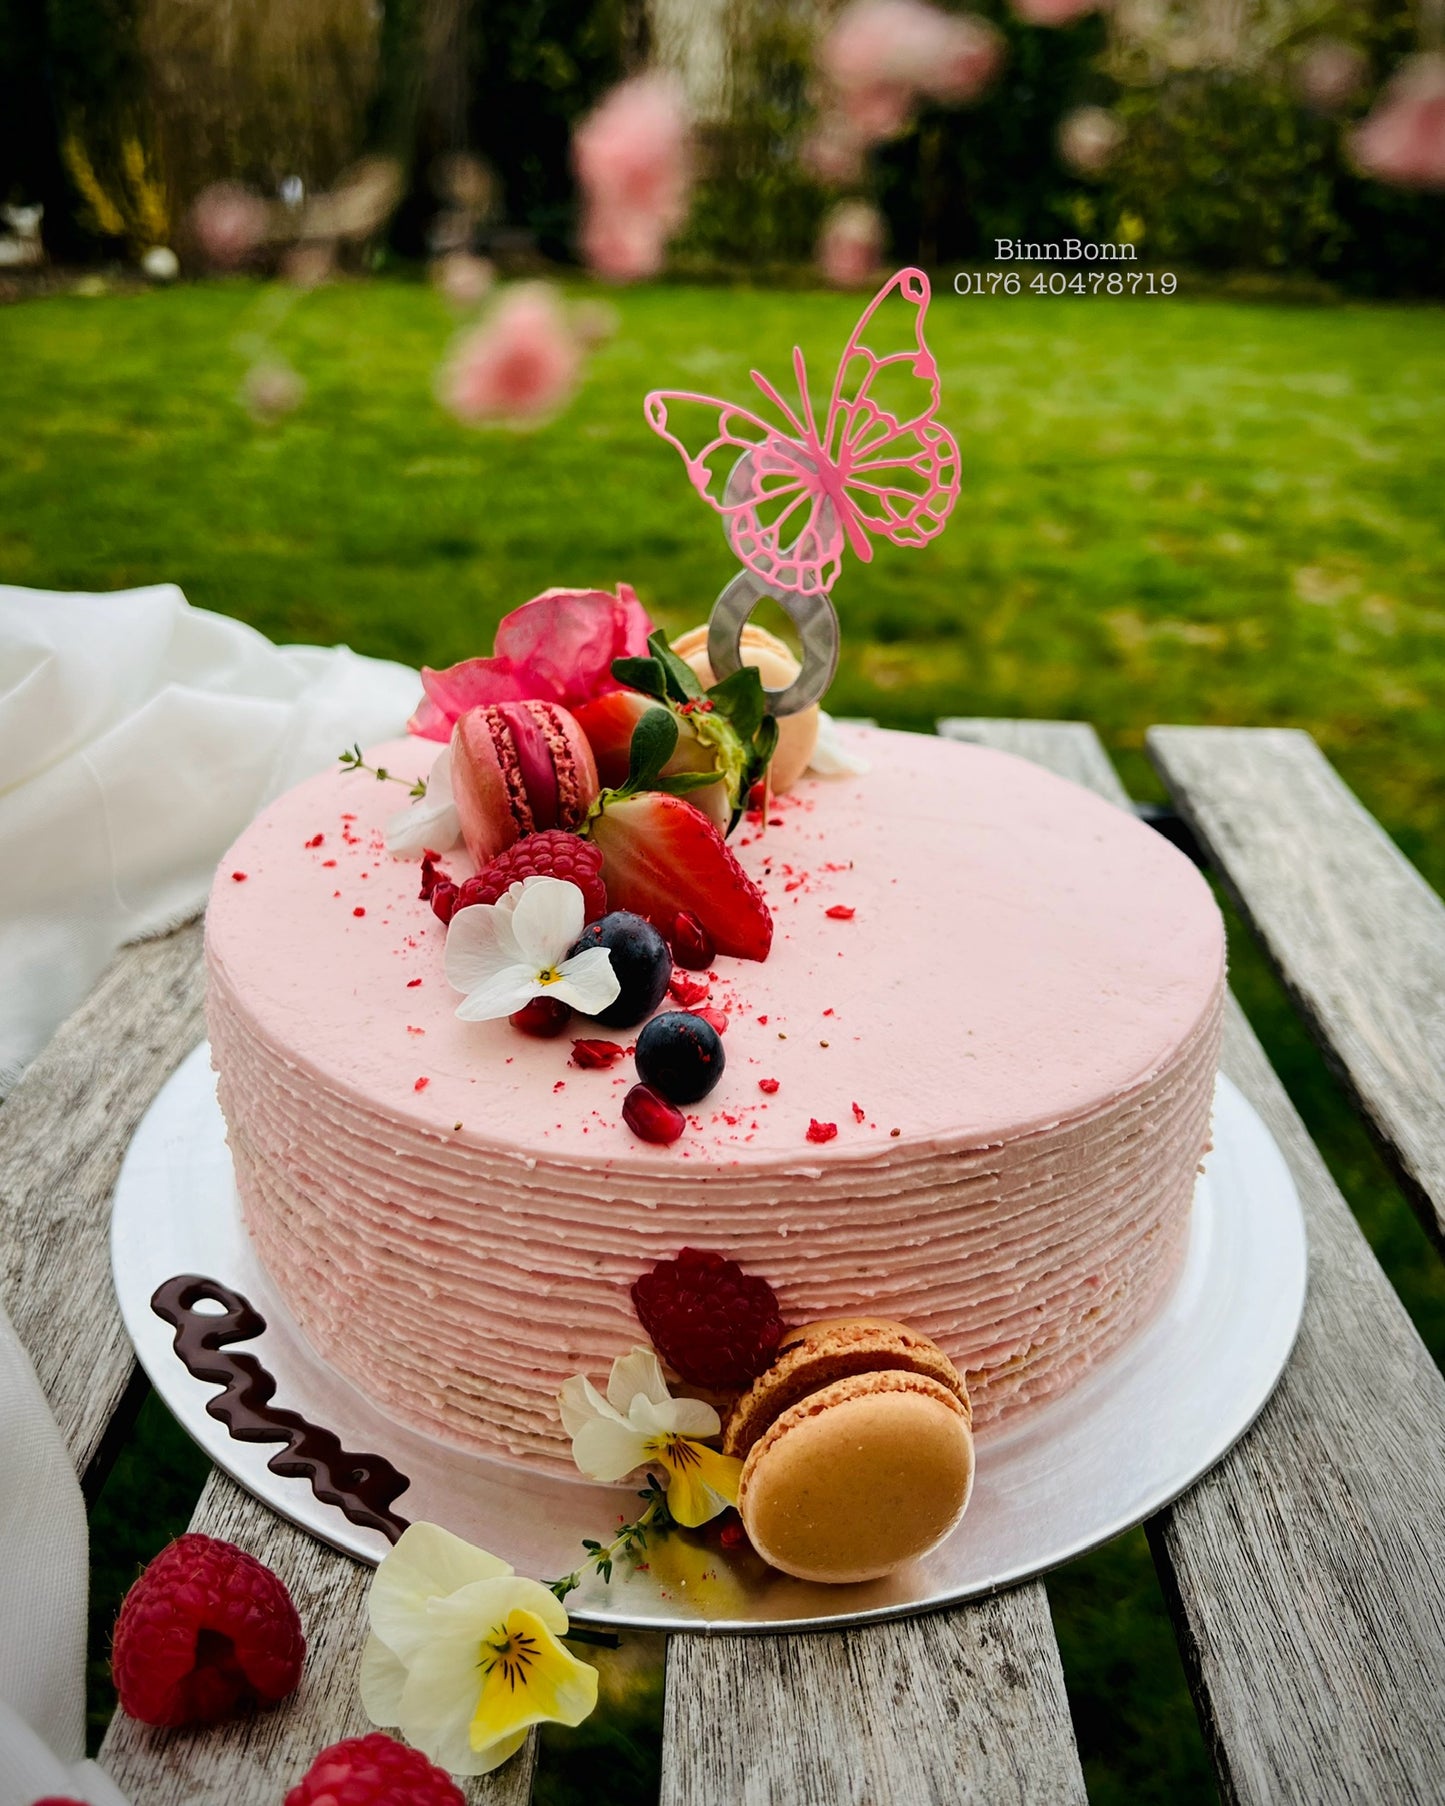 45. Torte "Pink Dream" mit frischen Beeren und essbaren Blüten 20 cm